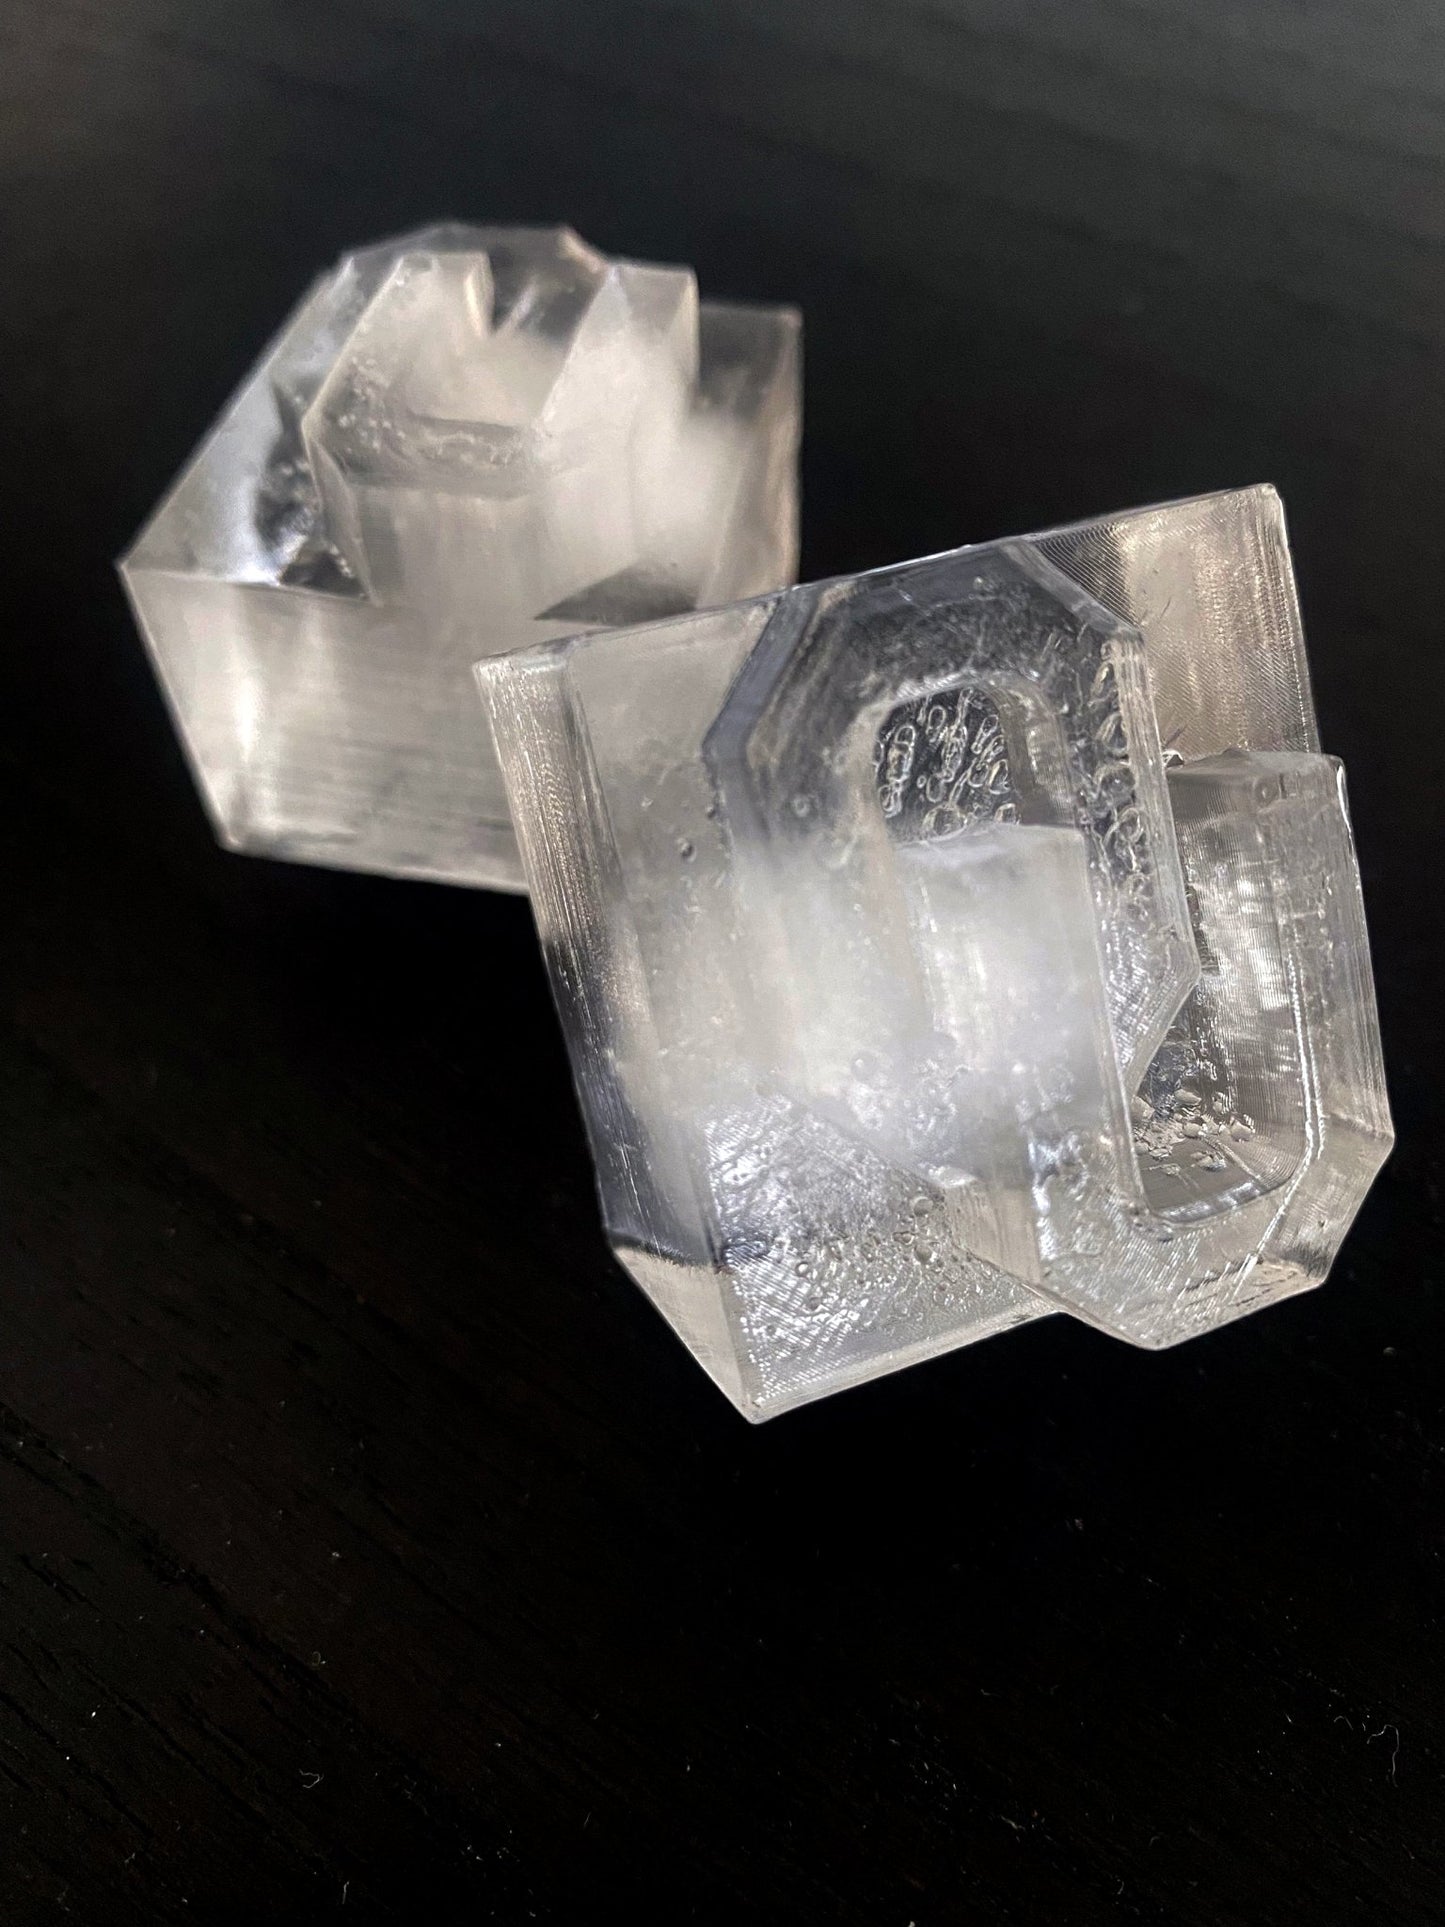 1.5 inch Ice Cube Tray Mold - Honest Ice